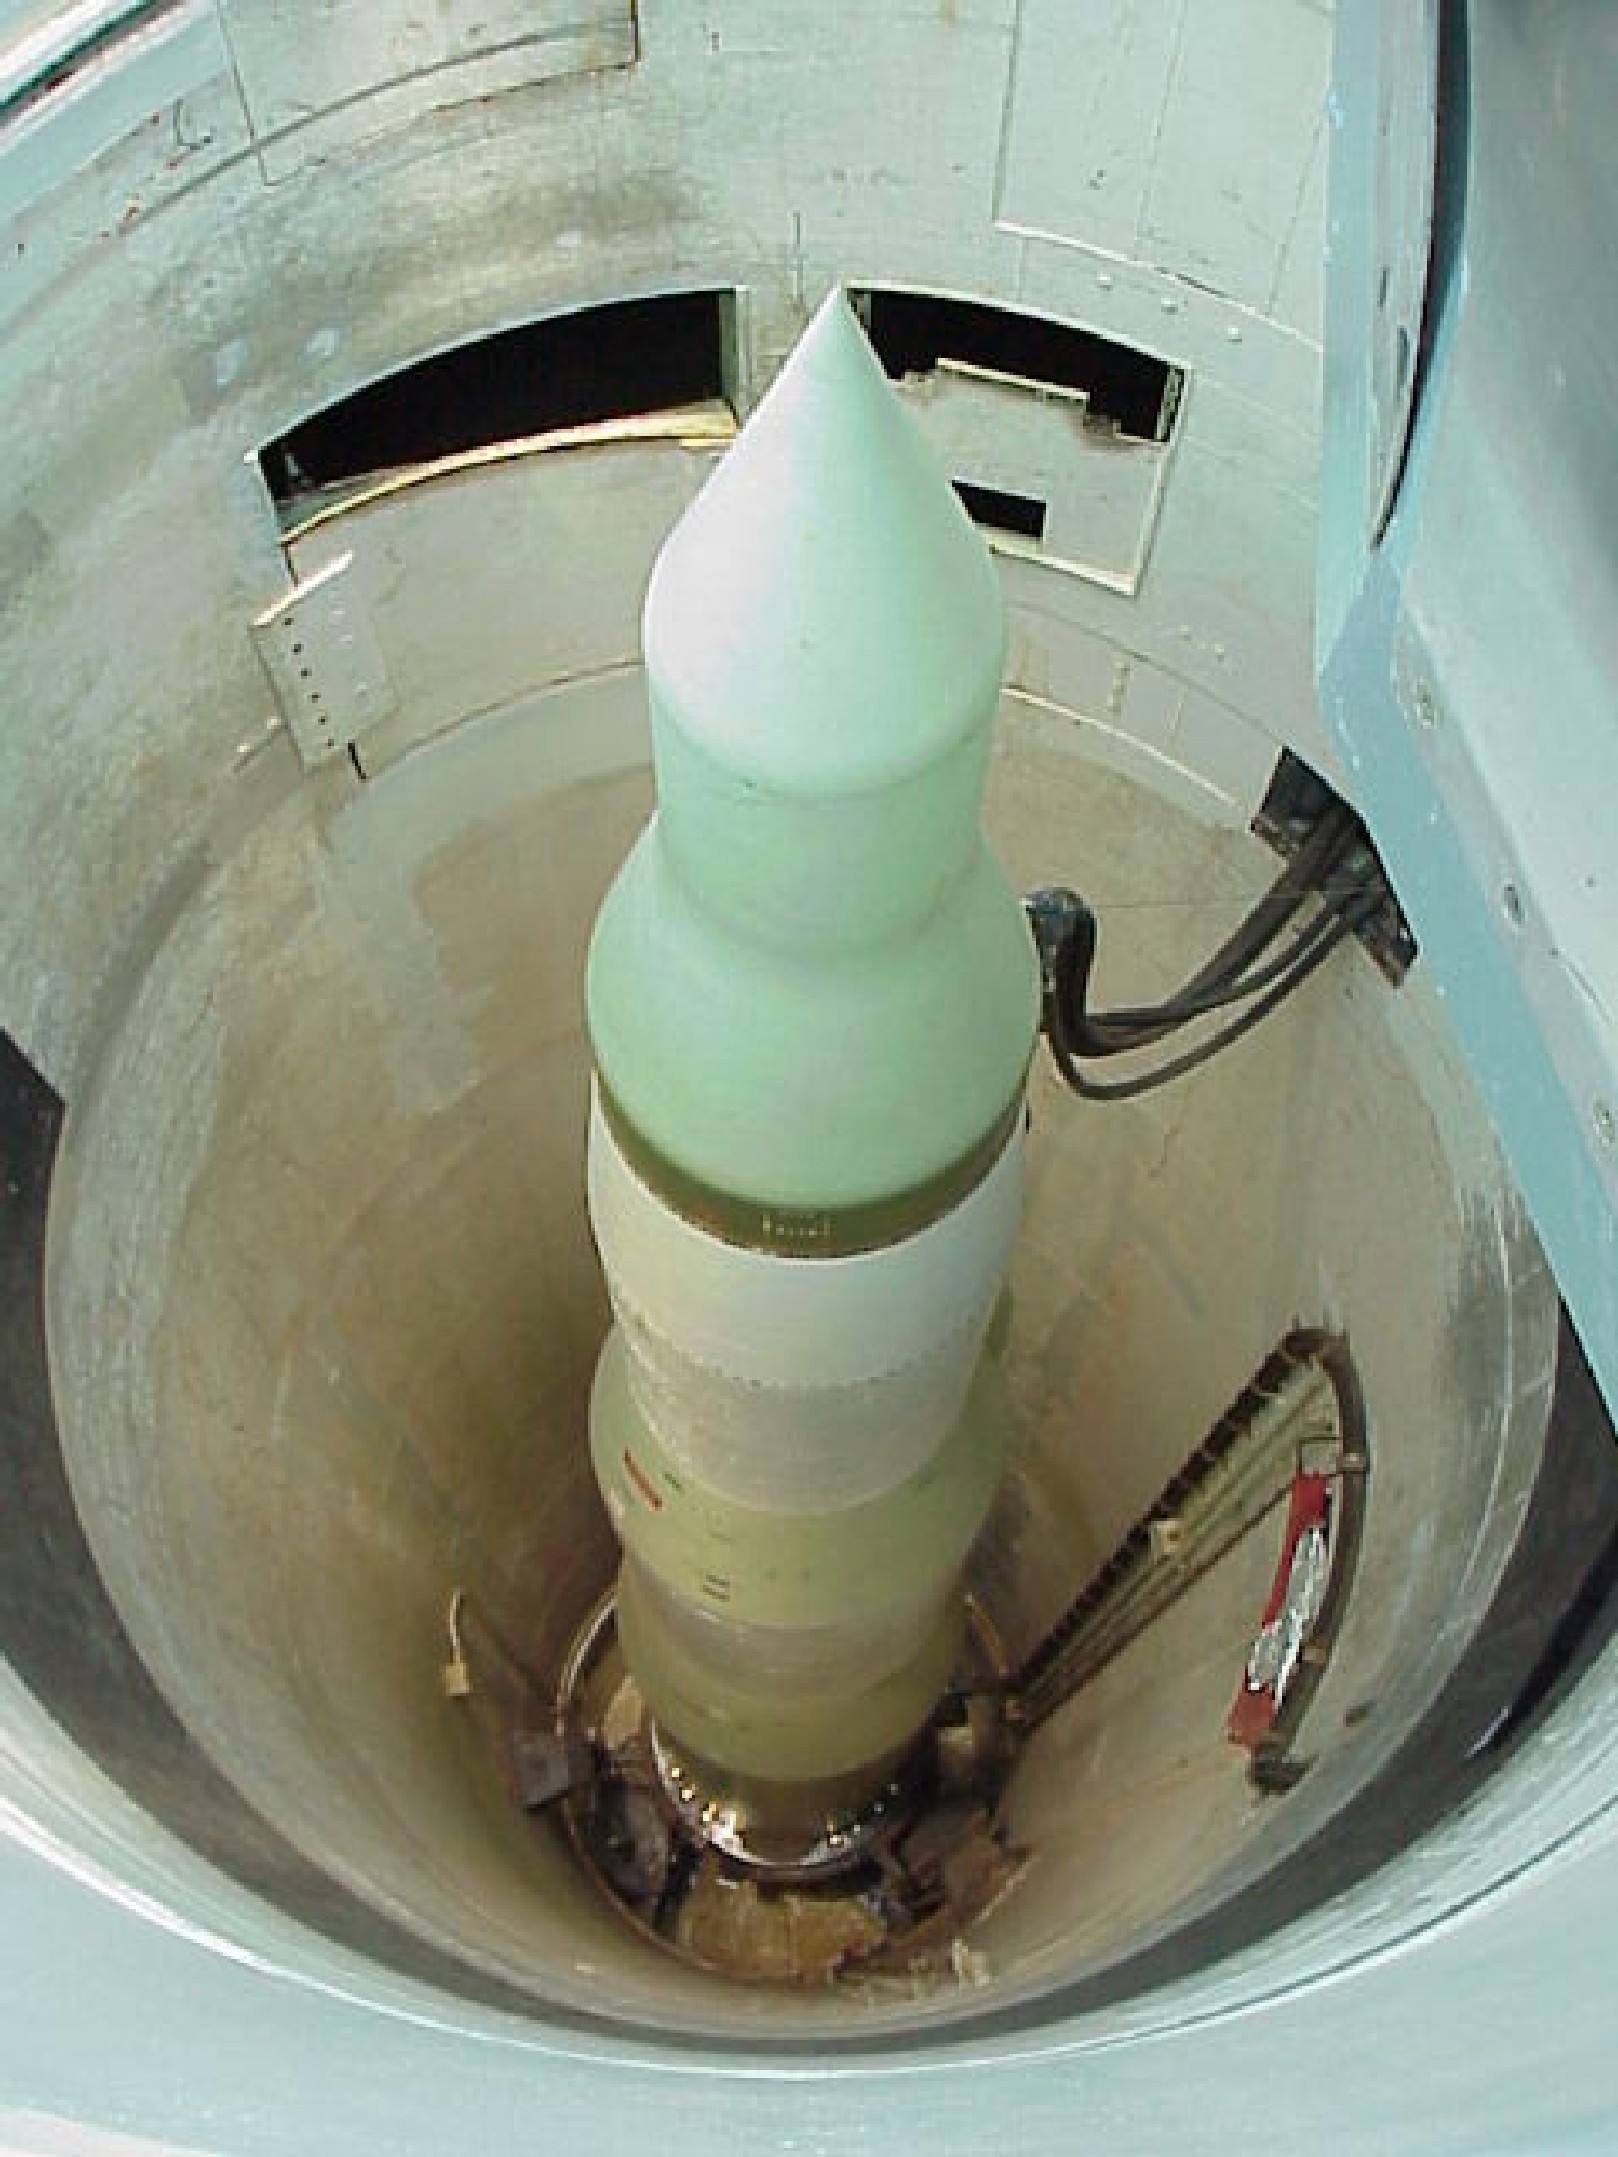 Minuteman 3 Missile